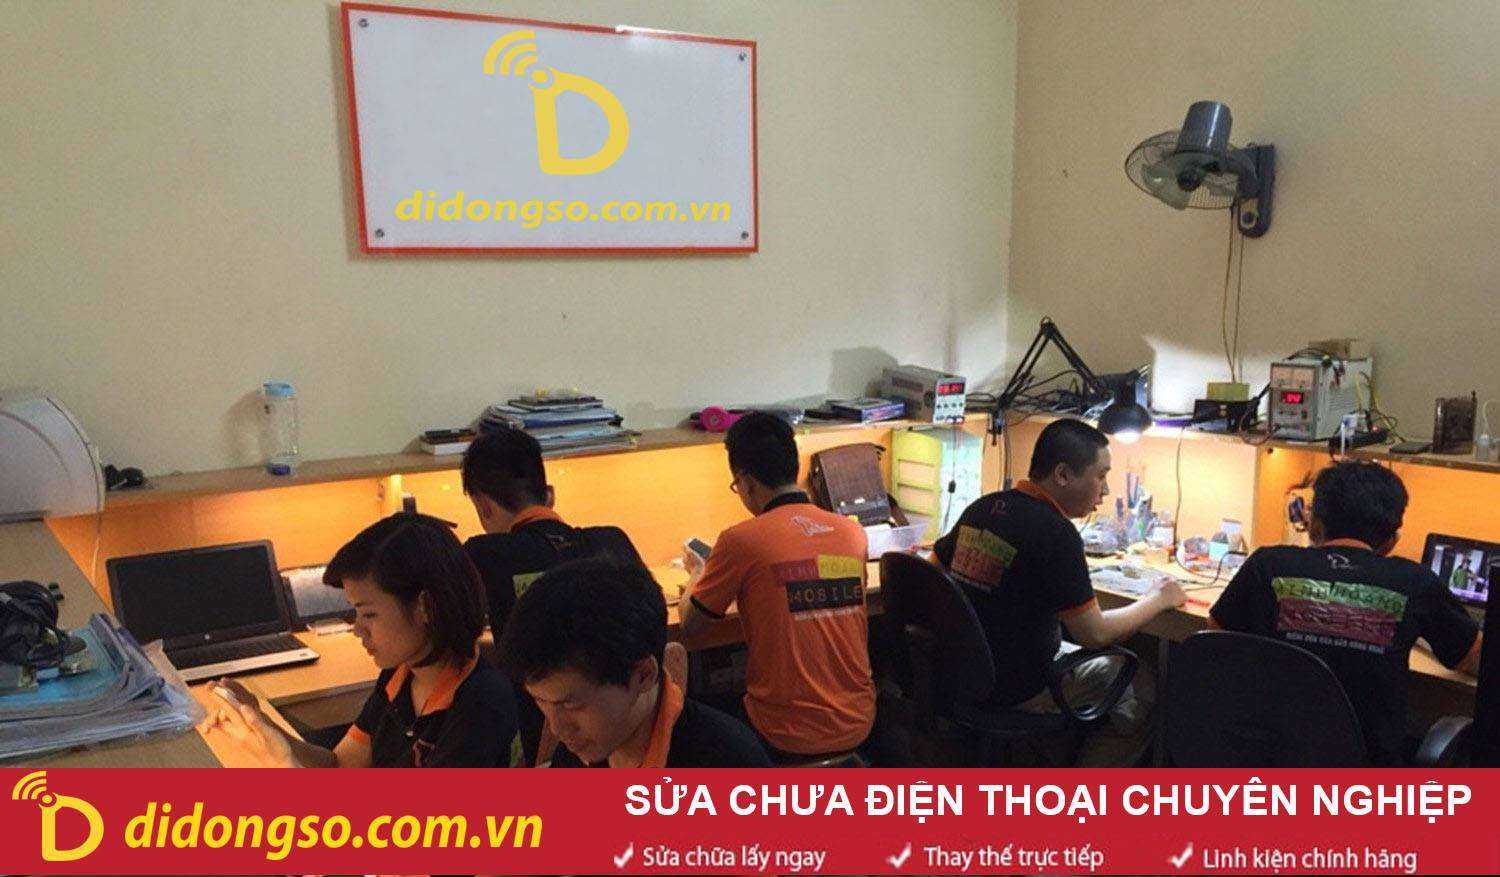 Sửa chữa điện thoại Nokia e72 uy tín giá rẻ tại Hà Nội